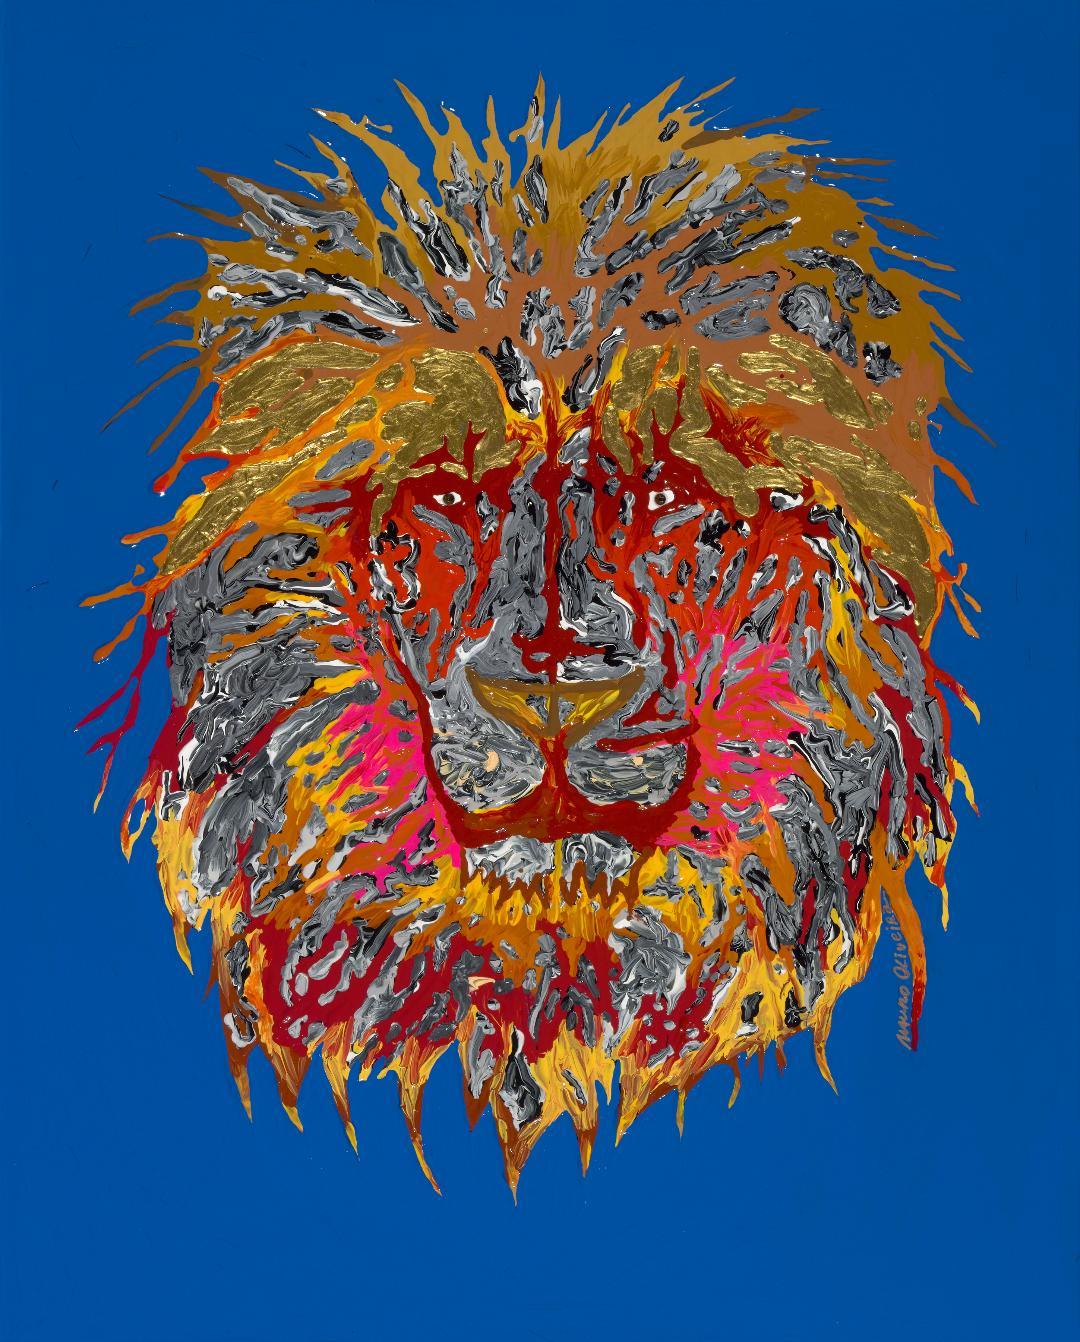 Fenix Lion (édition limitée de seulement 30 tirages sur toile) - Print de Mauro Oliveira